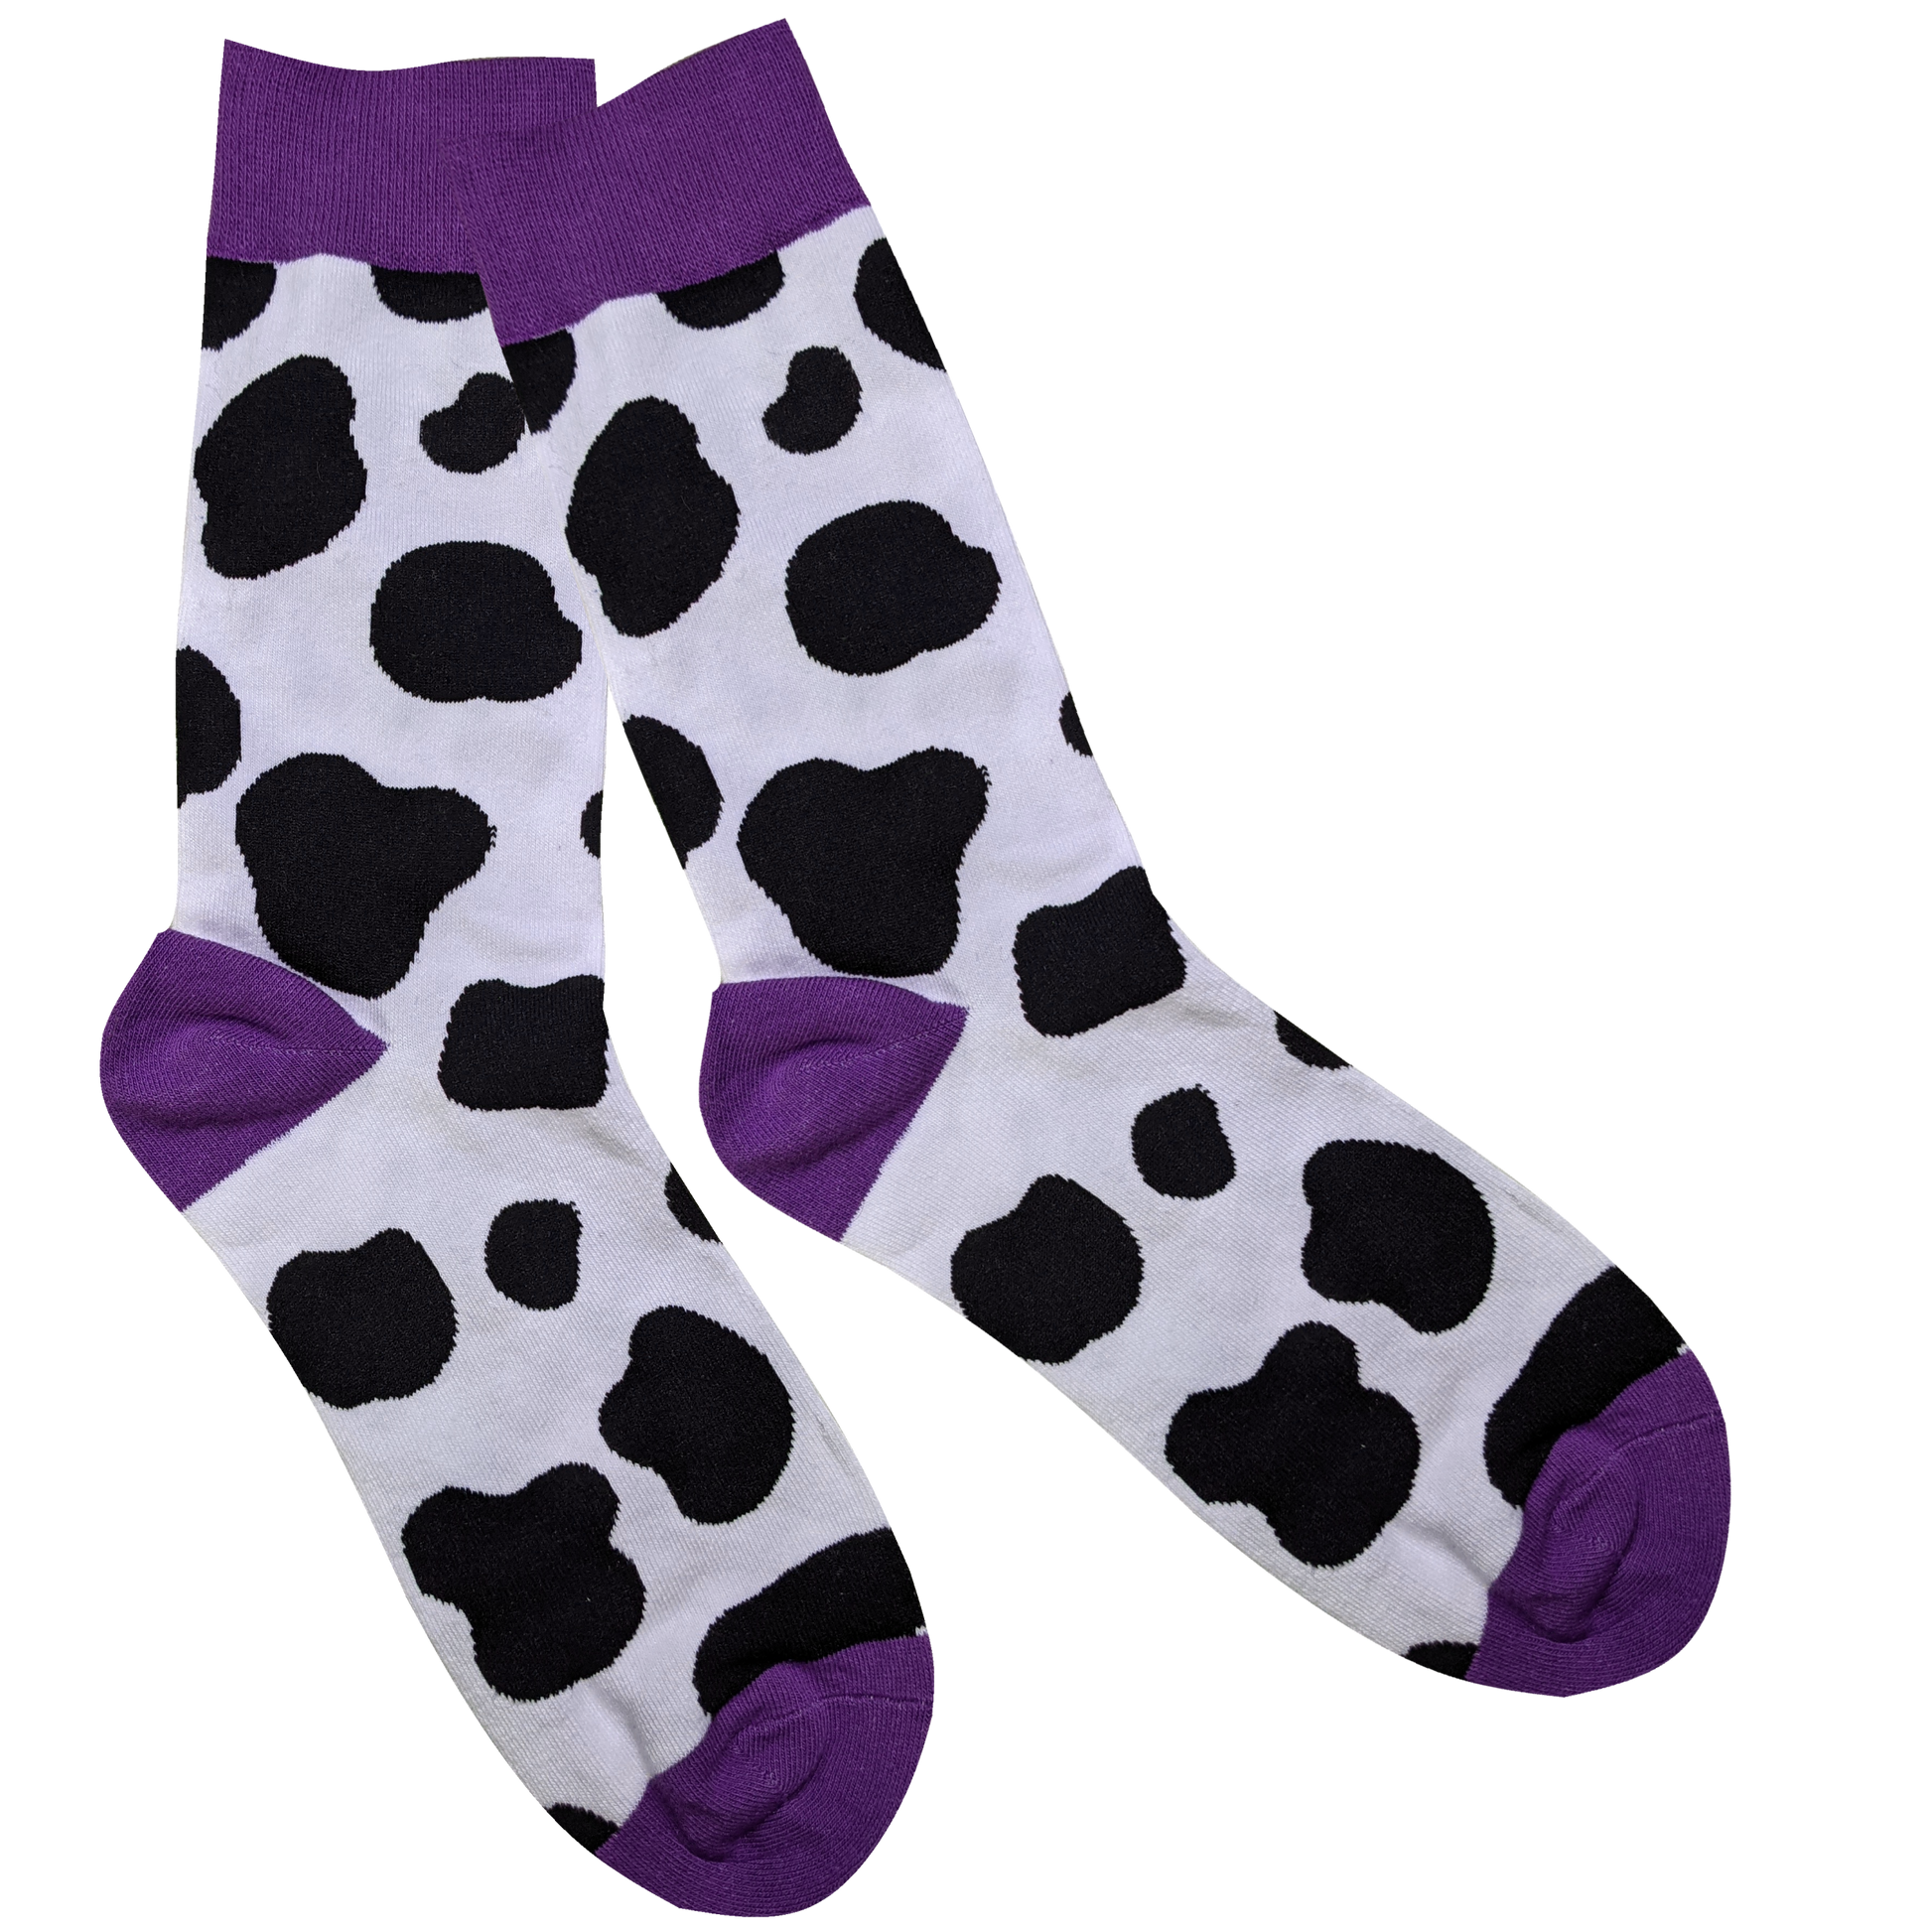 The Cow Print Socks - Sleepy Peach